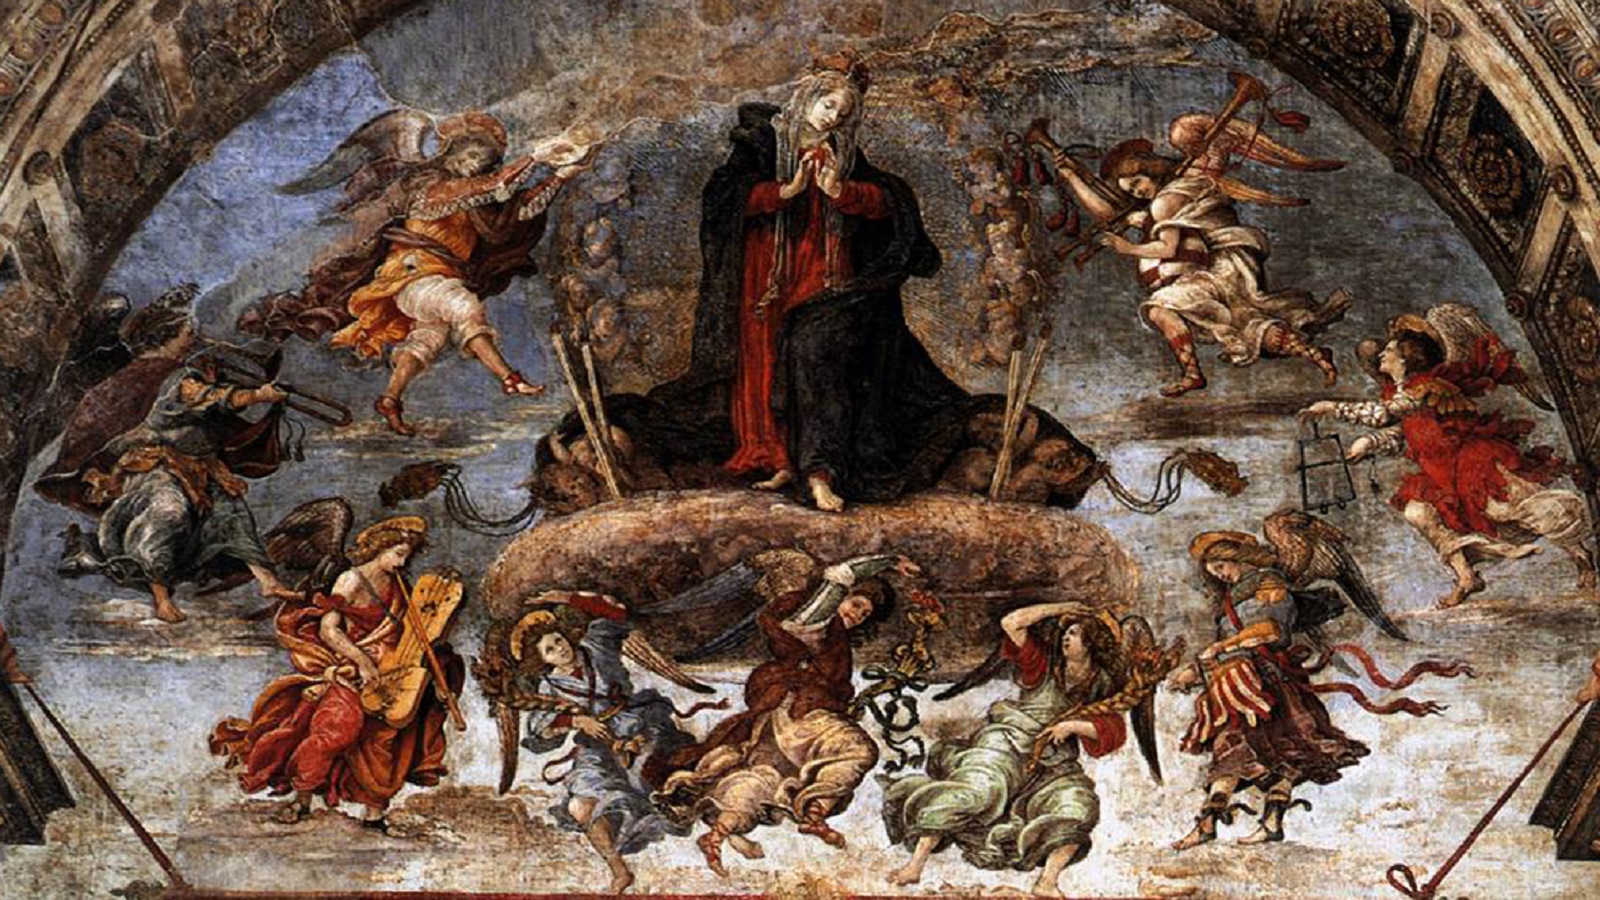 فيليبينو ليبي، انتقال العذراء إلى السماء، كنيسة مينارفا، روما.